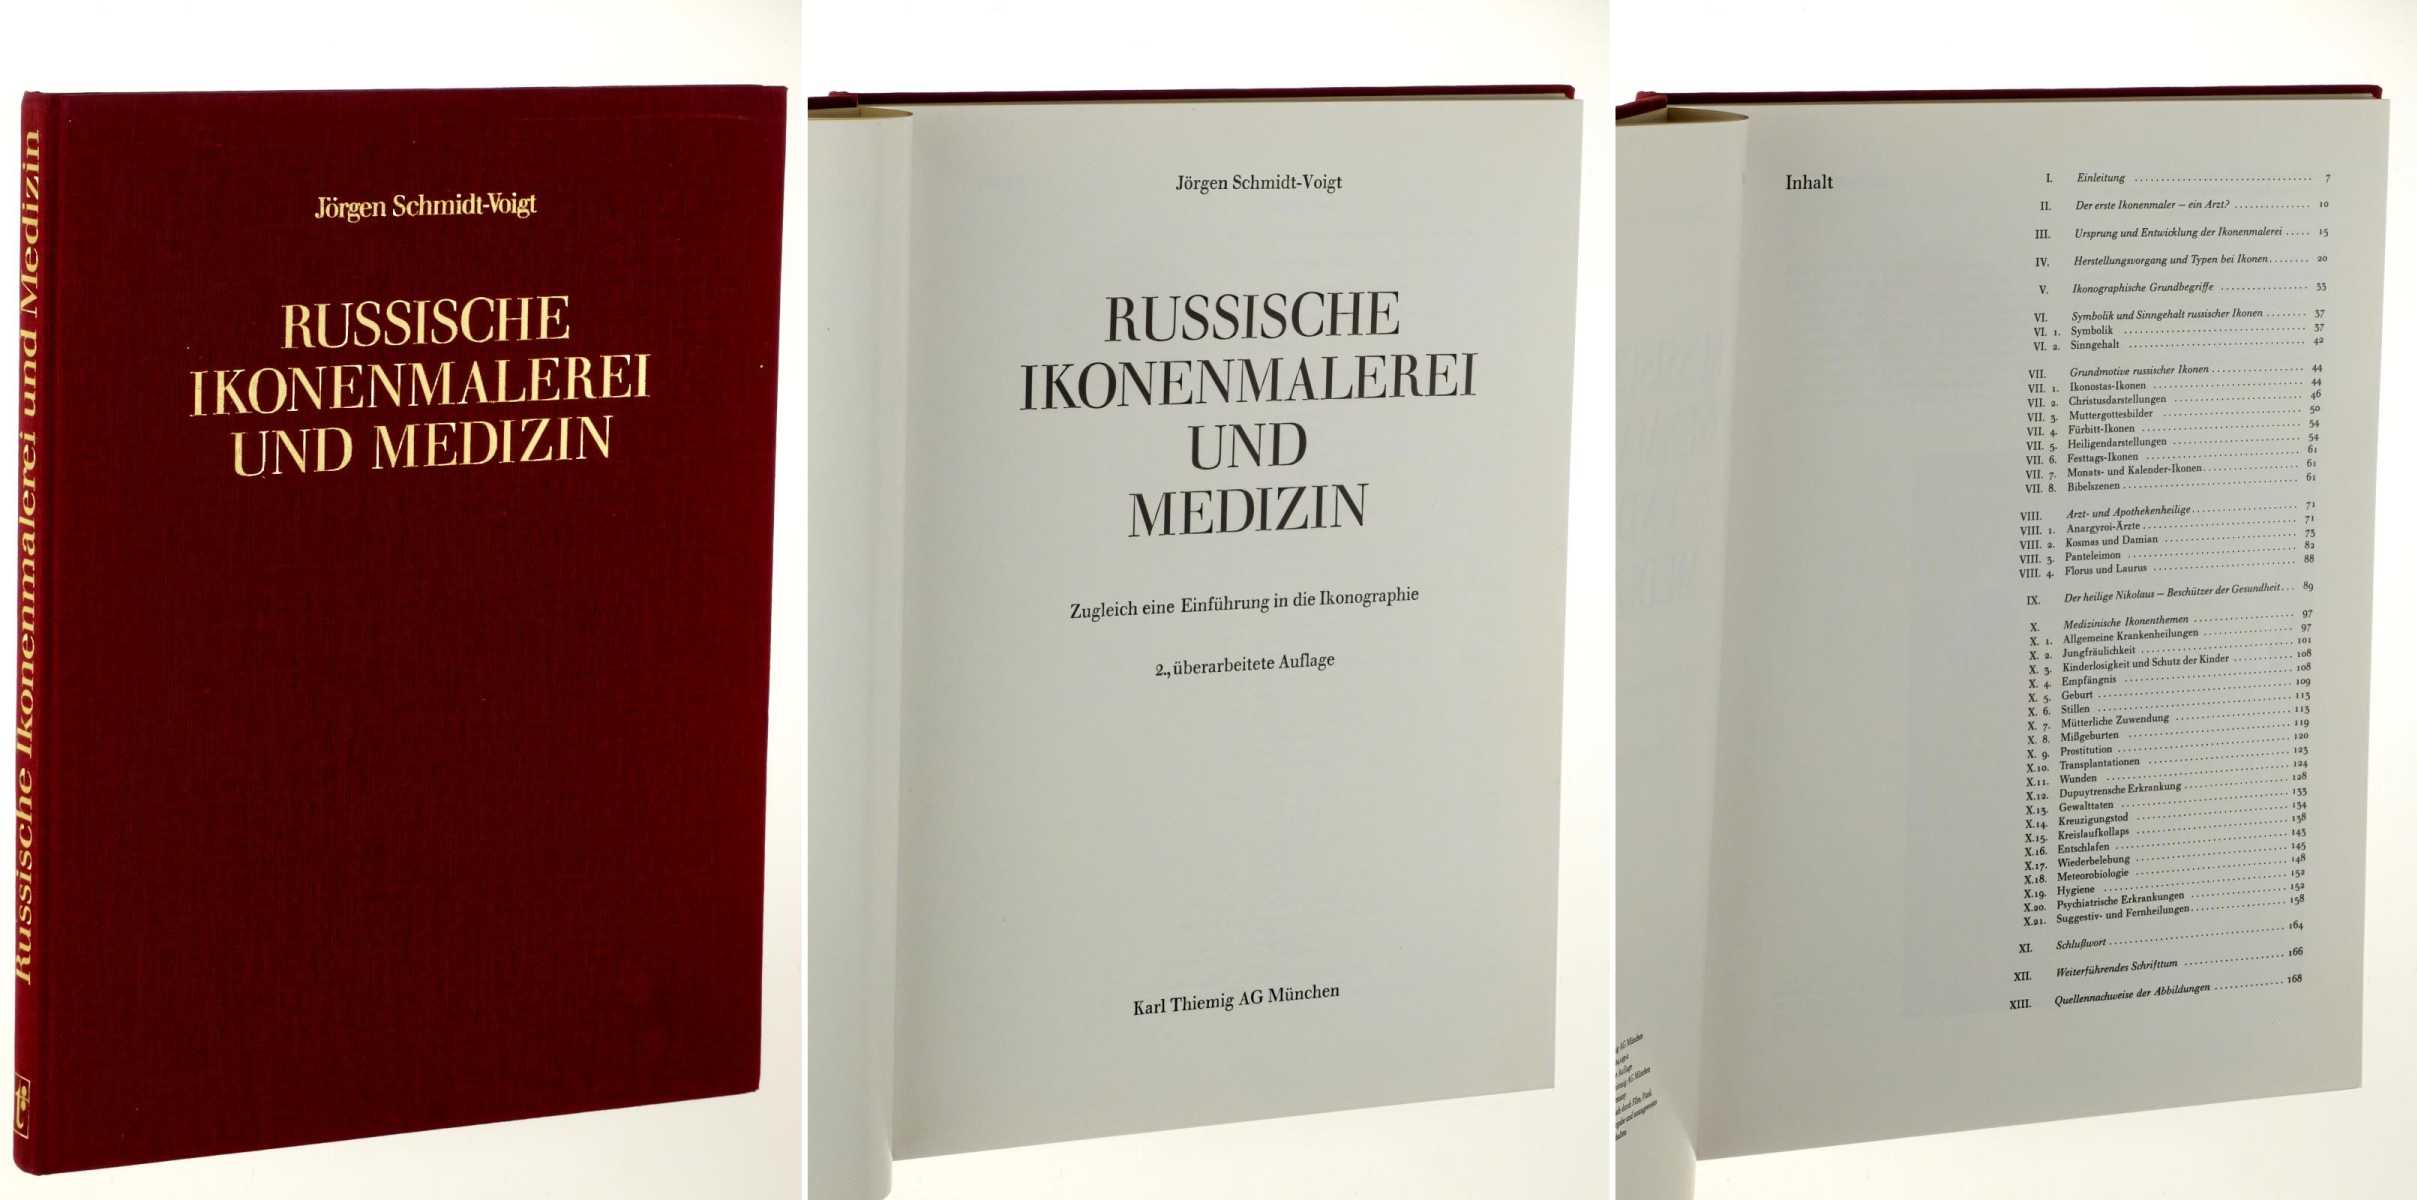 Russische Ikonenmalerei und Medizin. Zugleich eine Einführung in die Ikonographie. 2., überarb. Aufl. - Schmidt-Voigt, Jörgen